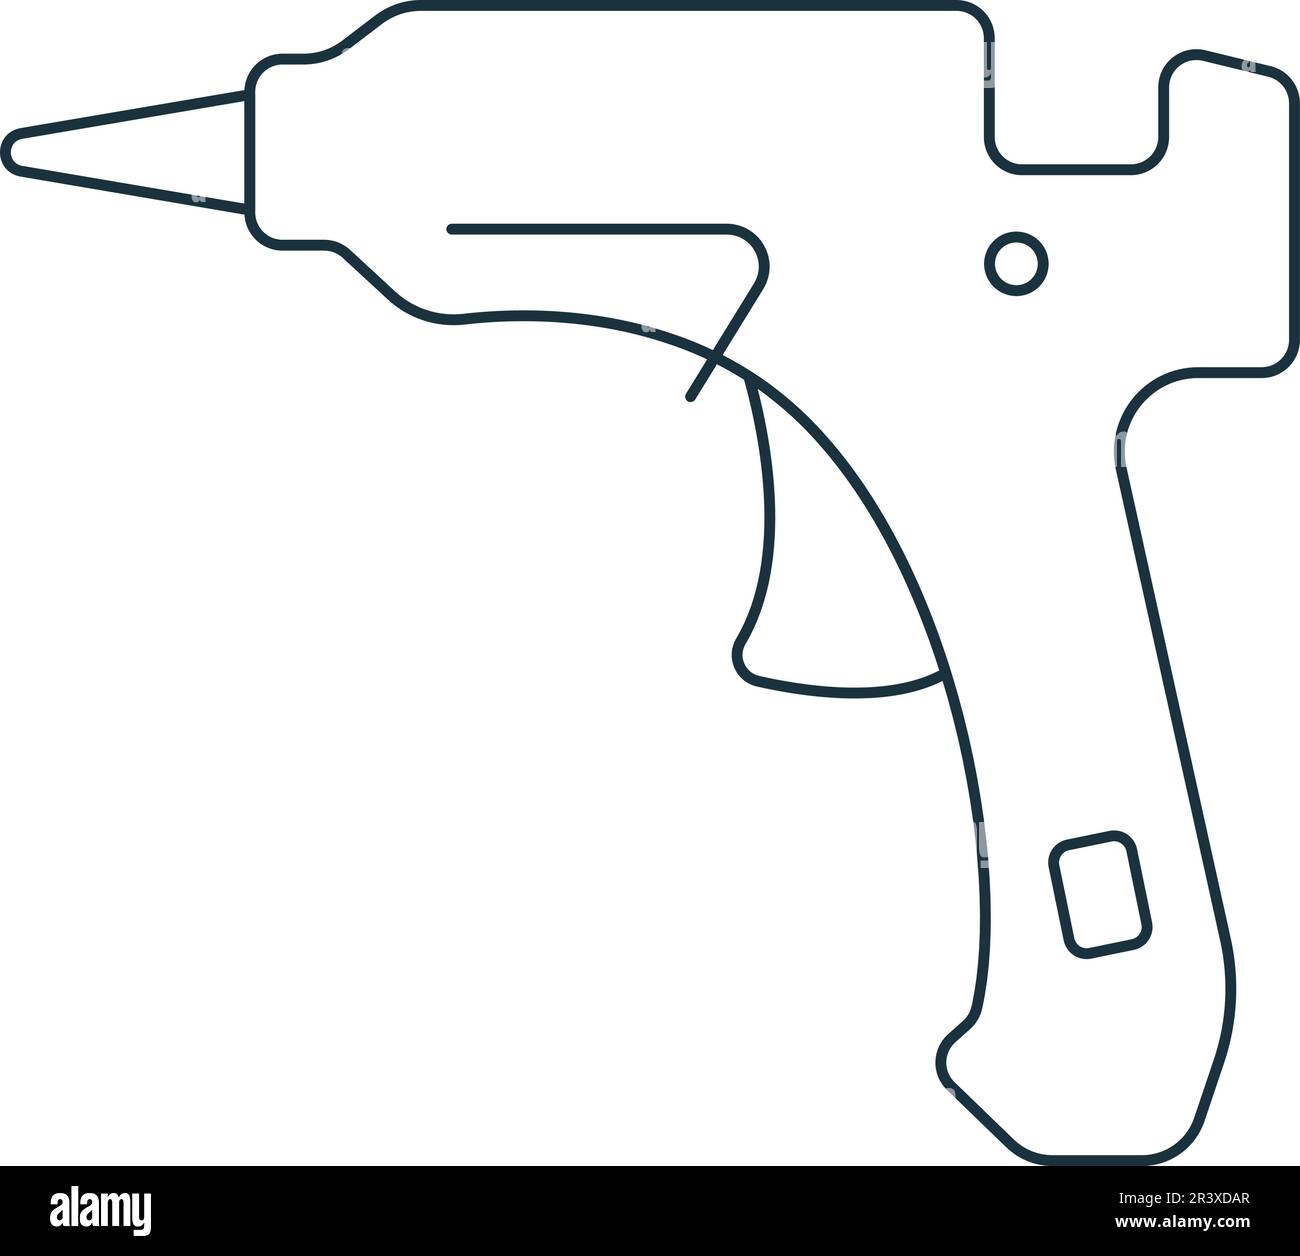 Pistola De Pegamento Industrial Para La Extrusión, Pastas De Silicona.  Ilustraciones svg, vectoriales, clip art vectorizado libre de derechos.  Image 26981207